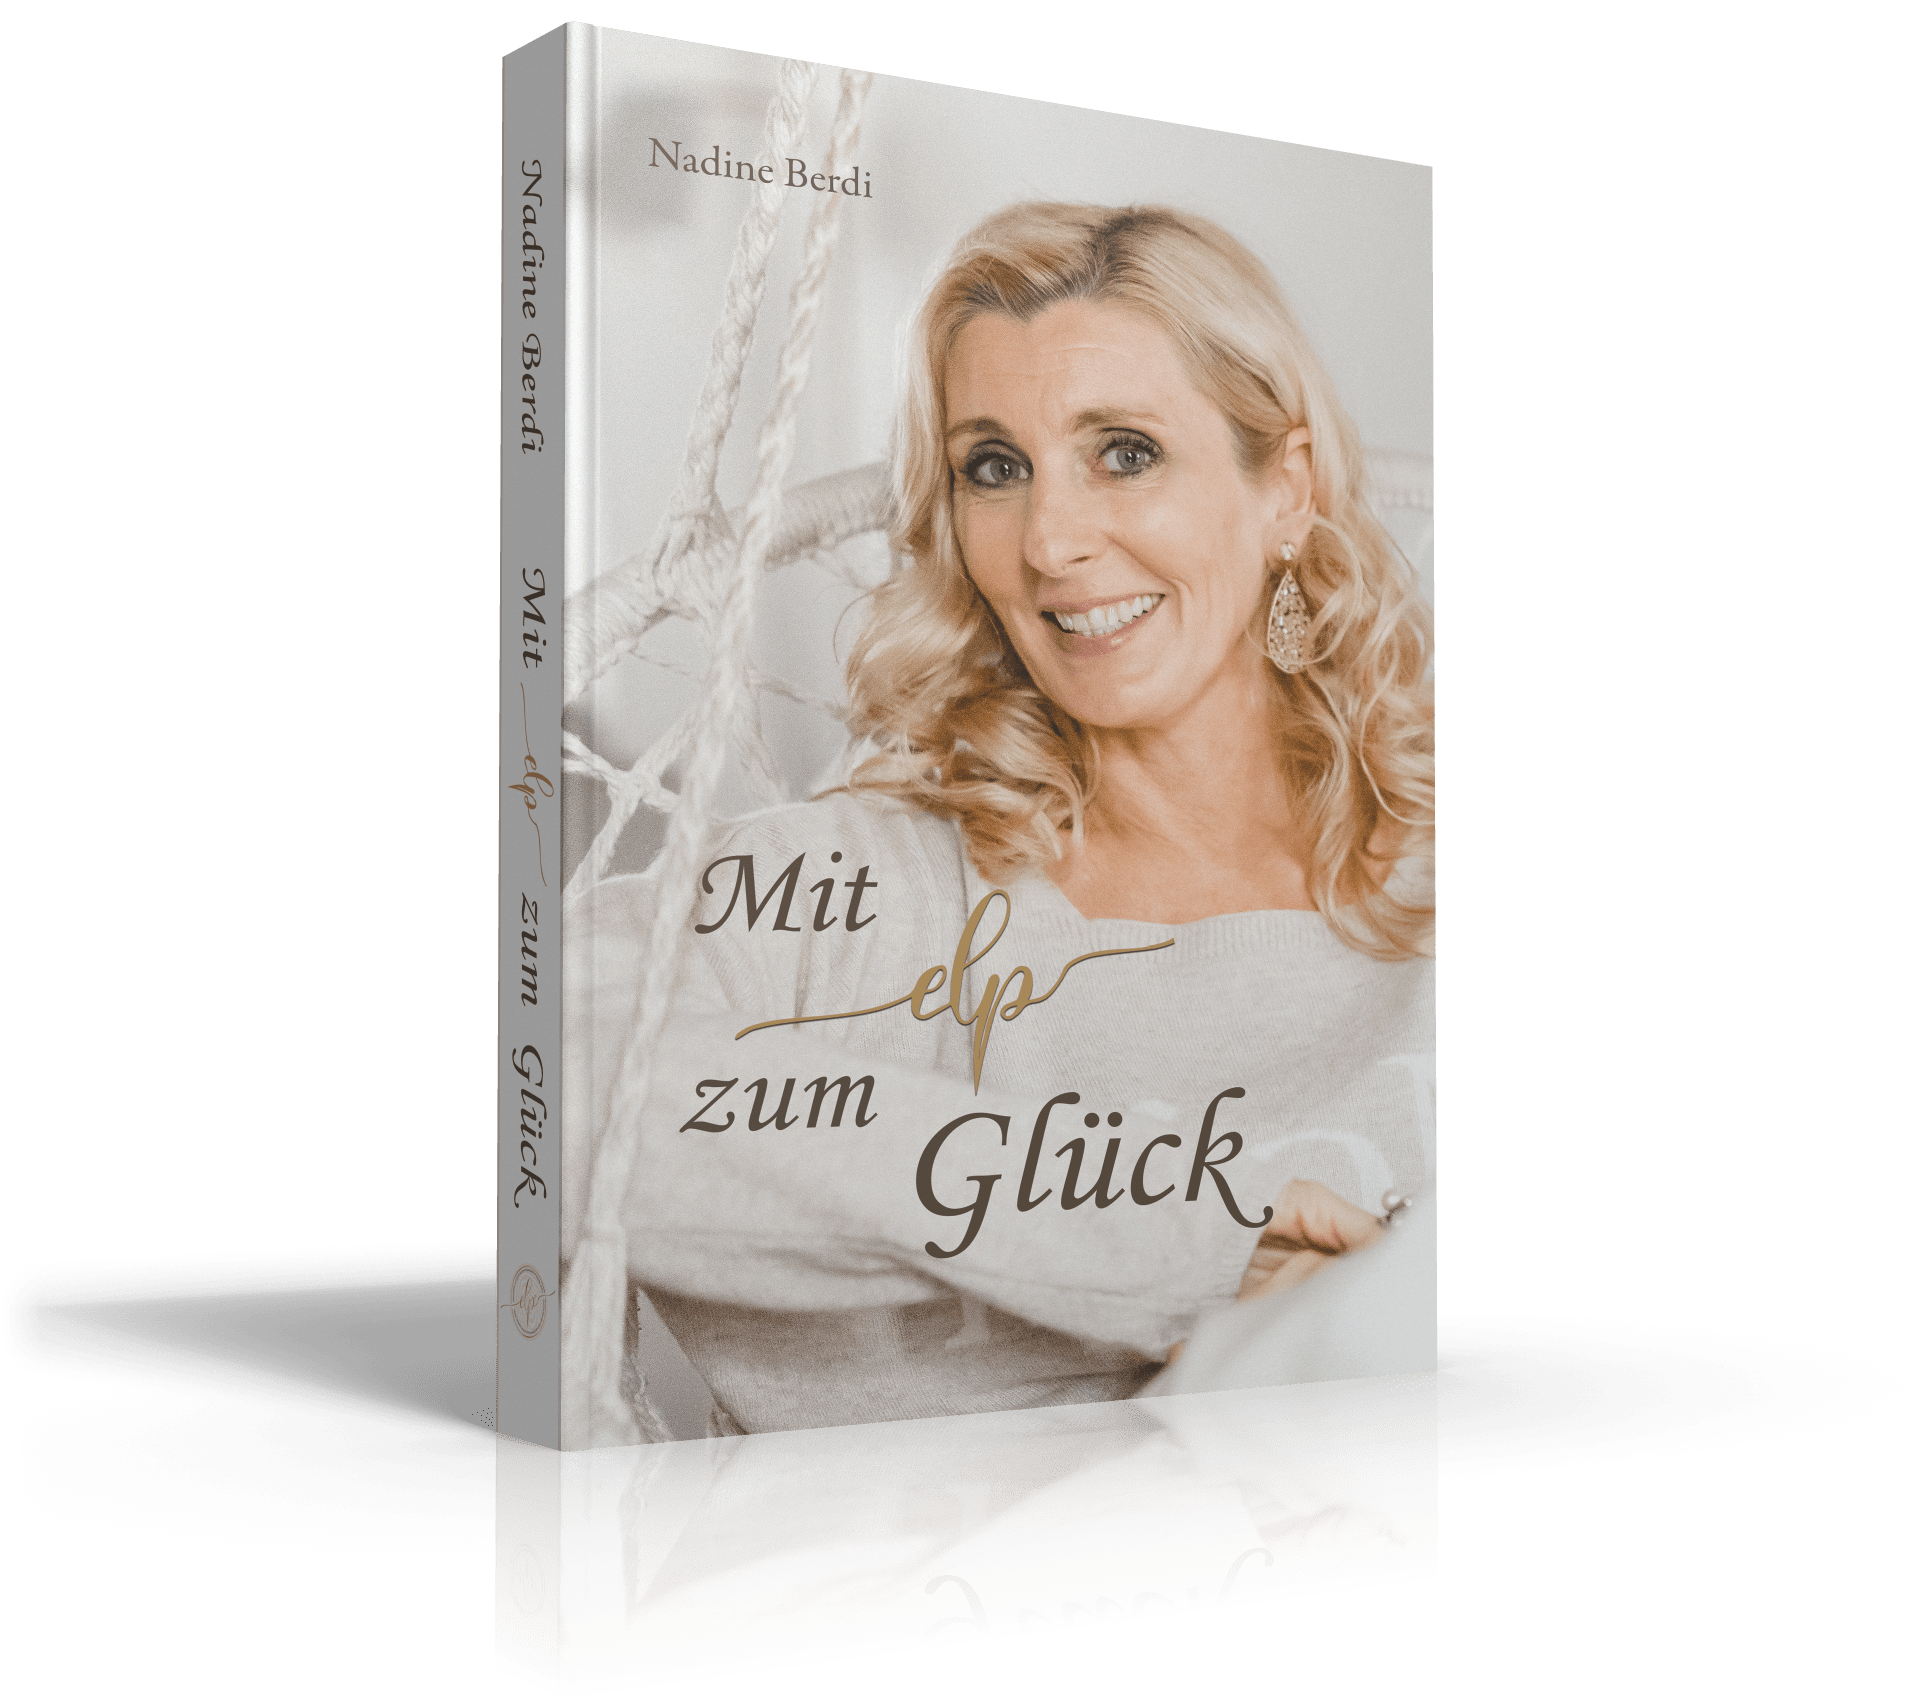 3D_Gluck_singlebook-crop-2